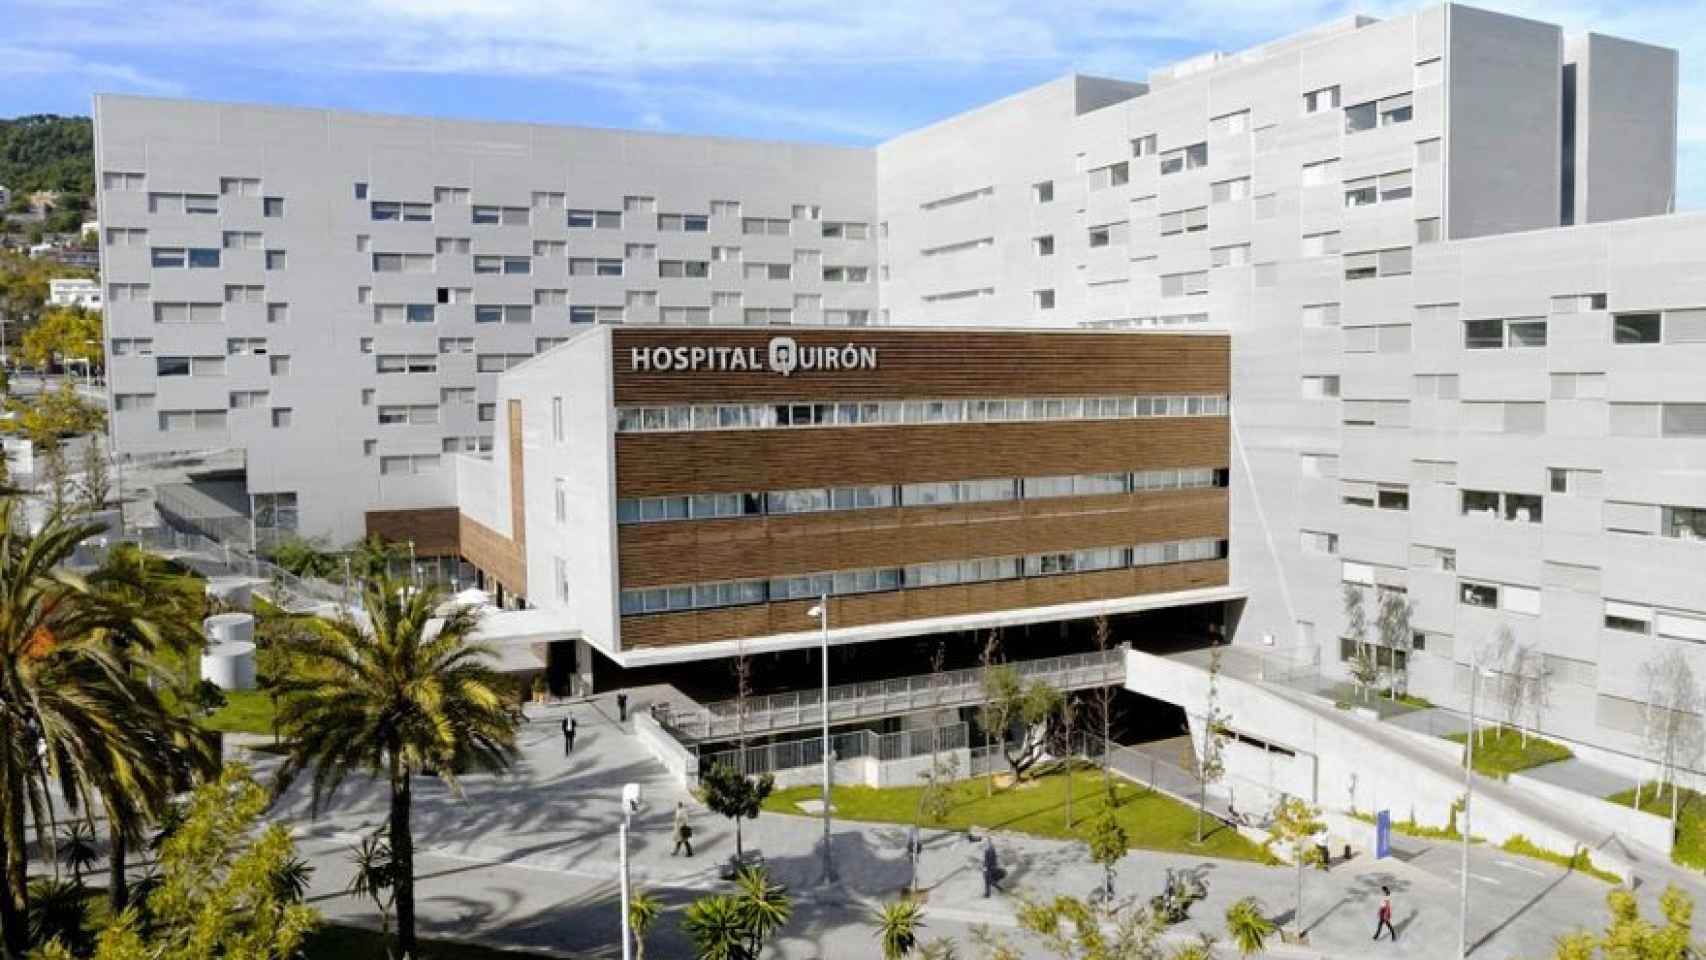 Hospital Quirón Barcelona